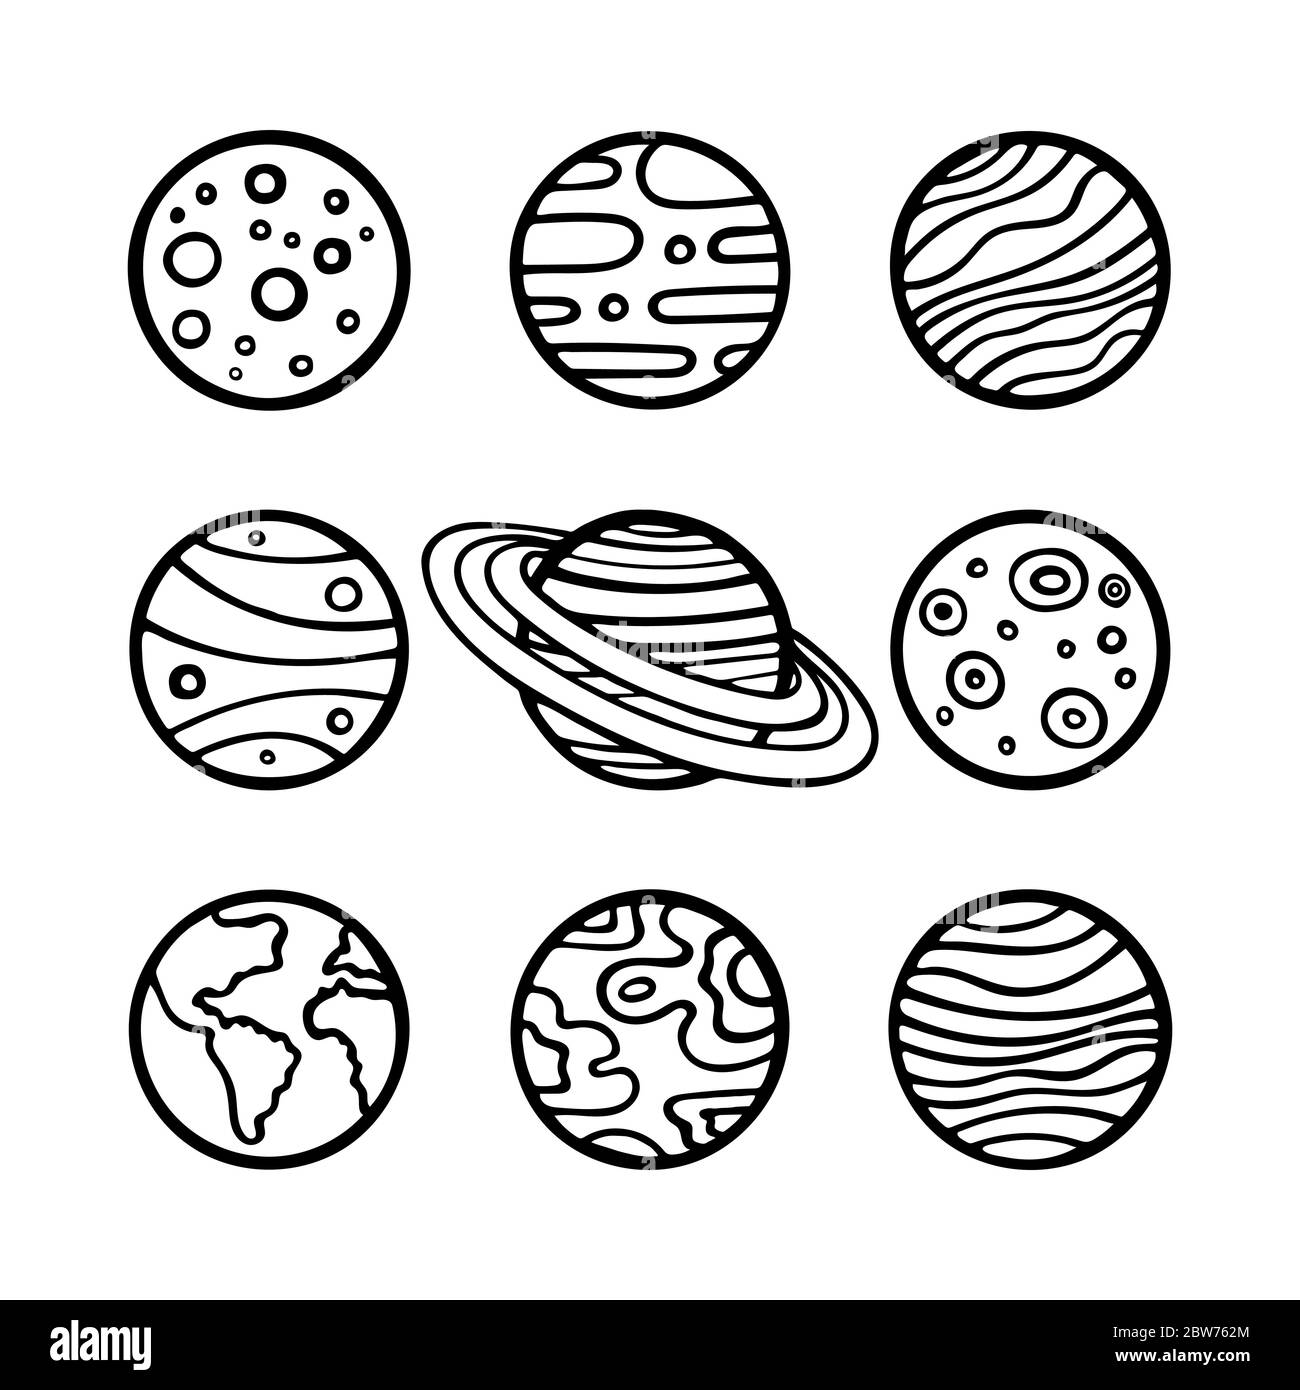 Sistema Solar Plano Con Planetas Simples De Dibujos Animados. Universo Para  Niños Sol Marte Mercurio Tierra Venus Jupiter Saturno Ilustración del  Vector - Ilustración de cosmo, infantil: 217263384